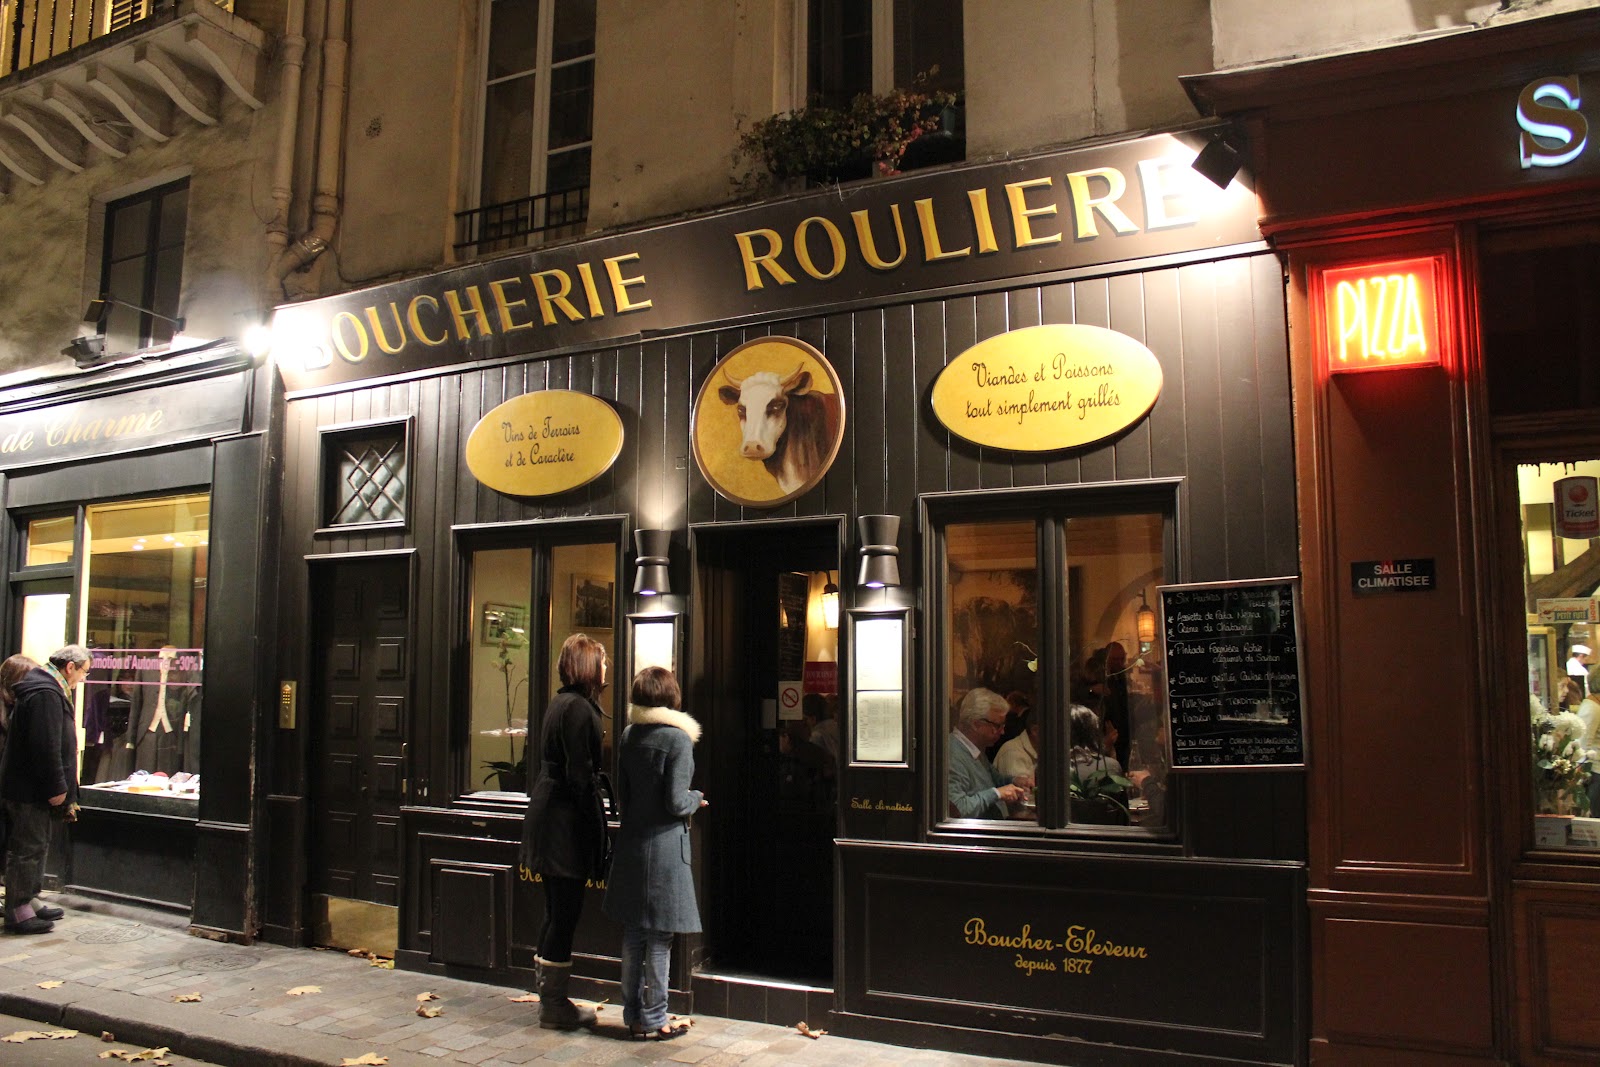 How We Do Paris...: Boucherie Rouliere